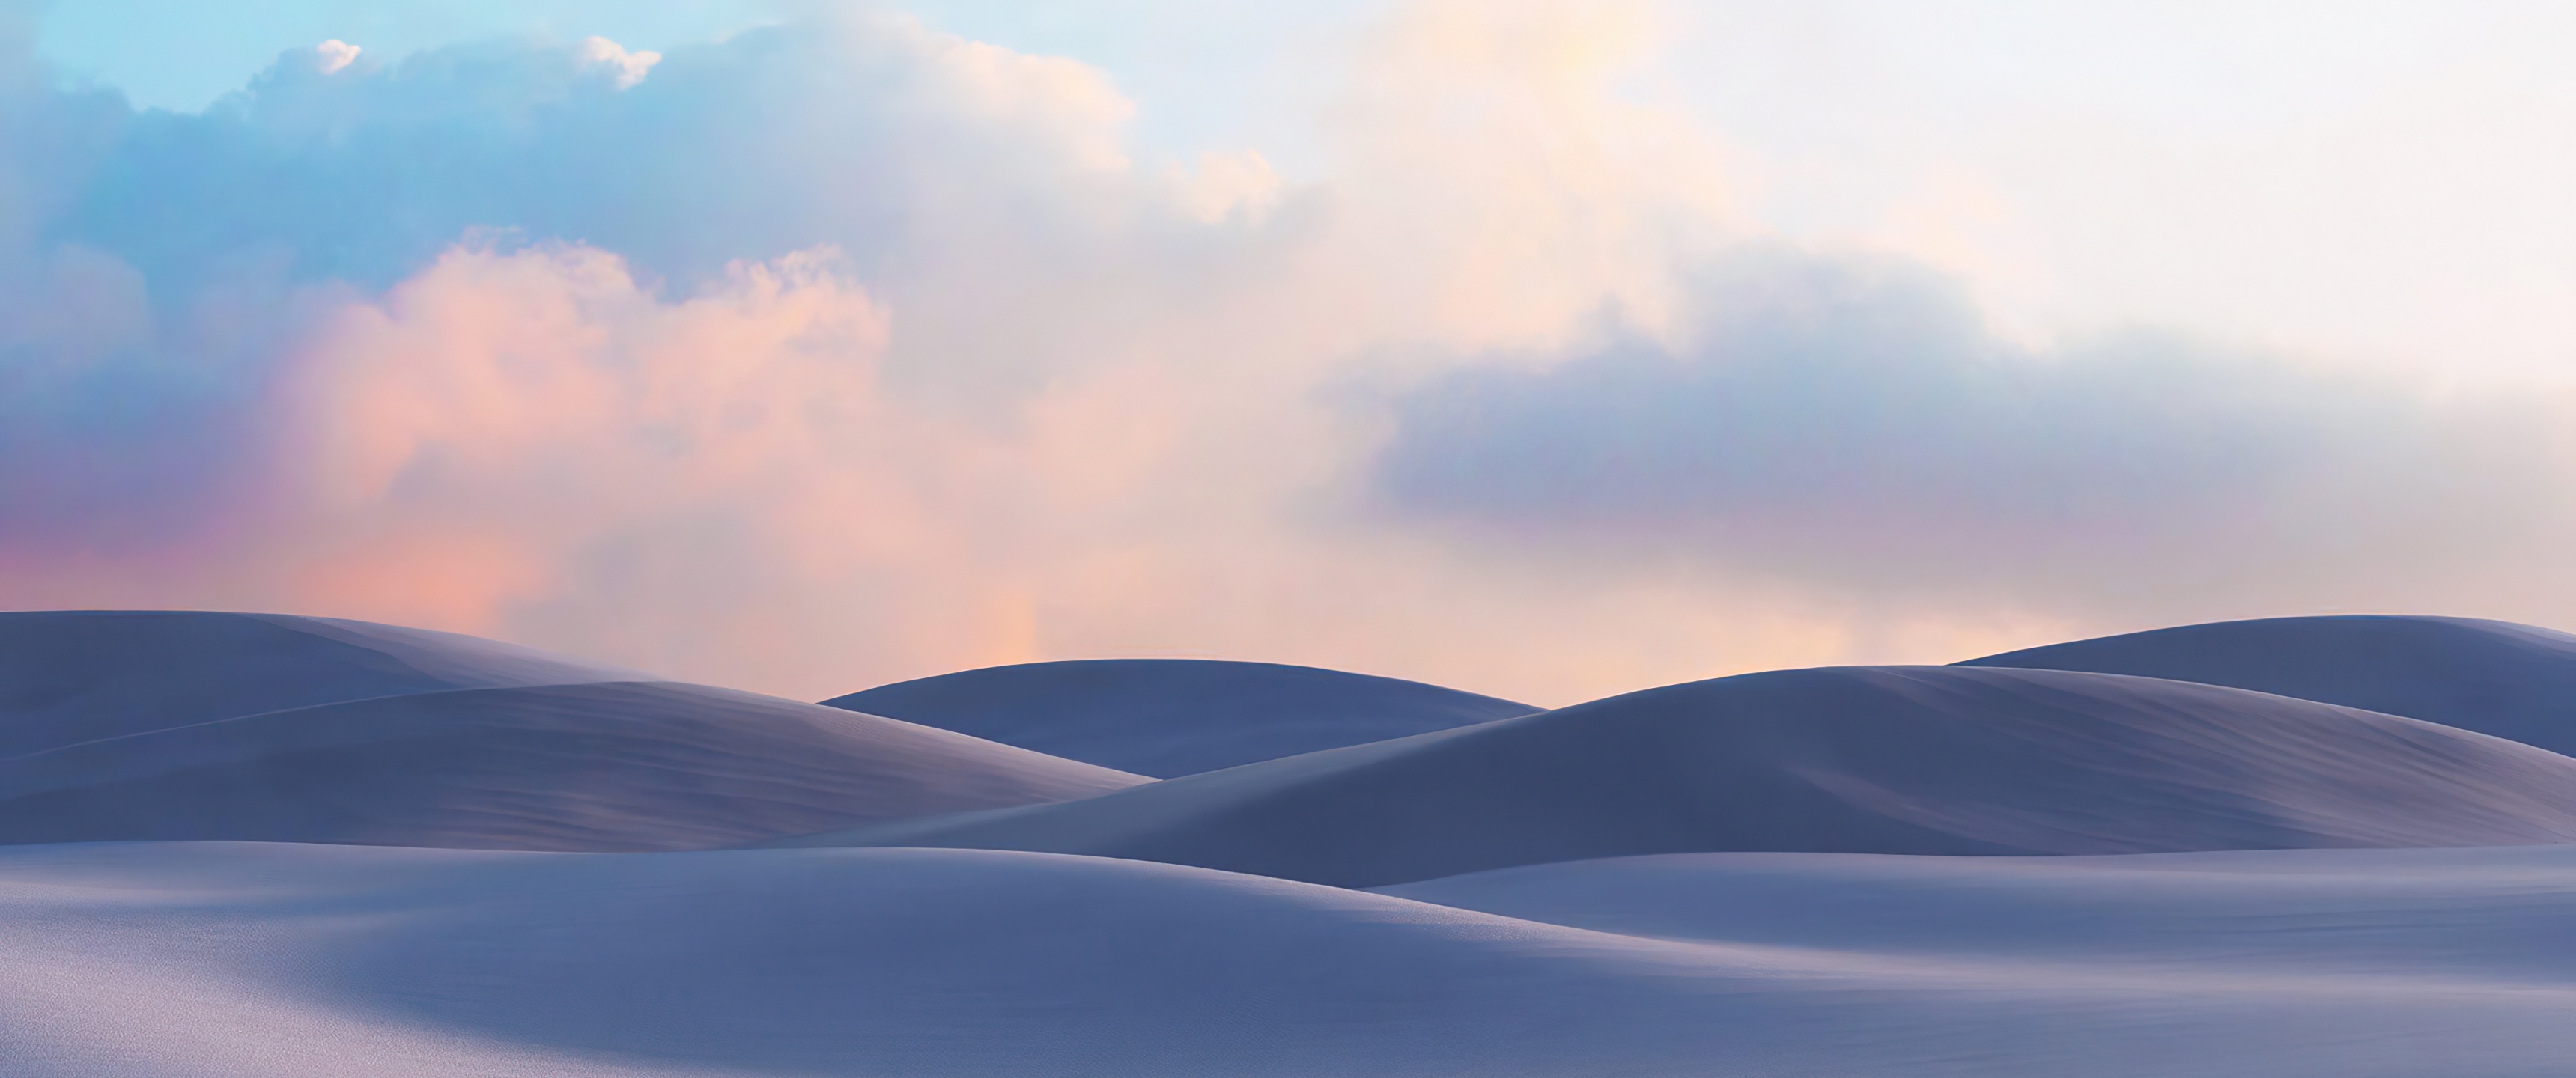 Sand Dunes Wallpaper 4K, Desert, Landscape, Evening, Windows 10X, Nature